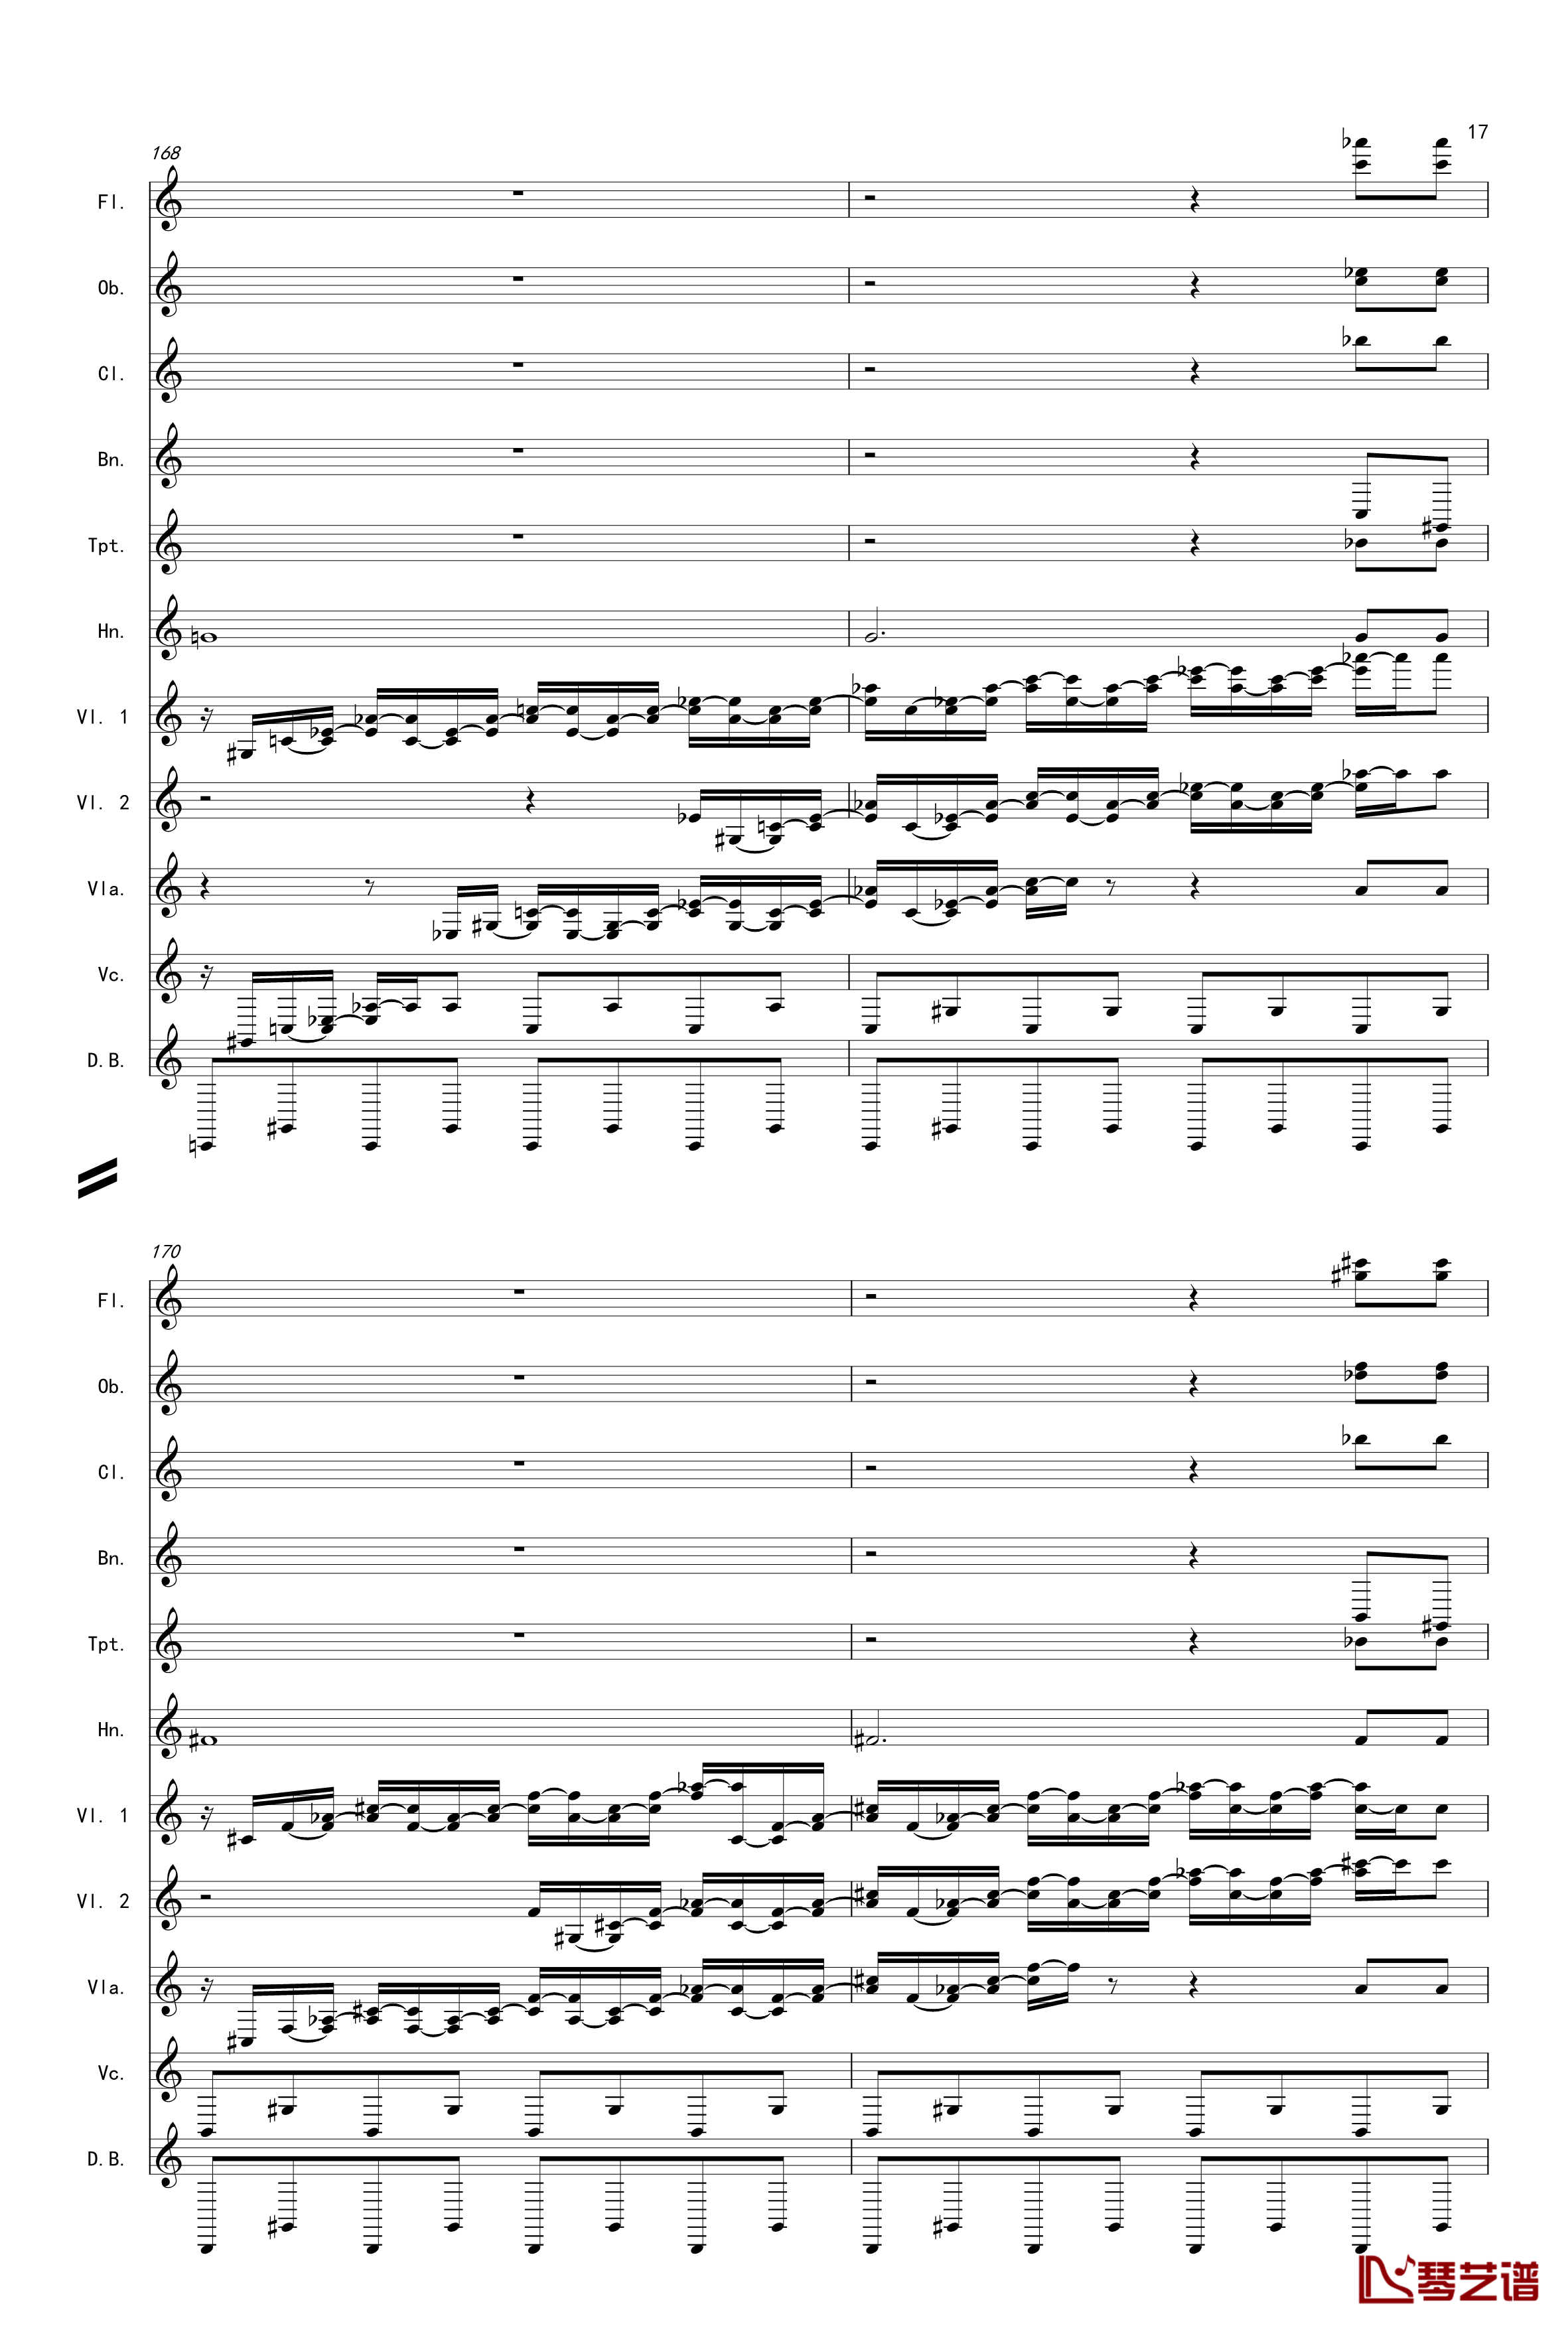 奏鸣曲之交响第14首Ⅲ钢琴谱-贝多芬-beethoven17